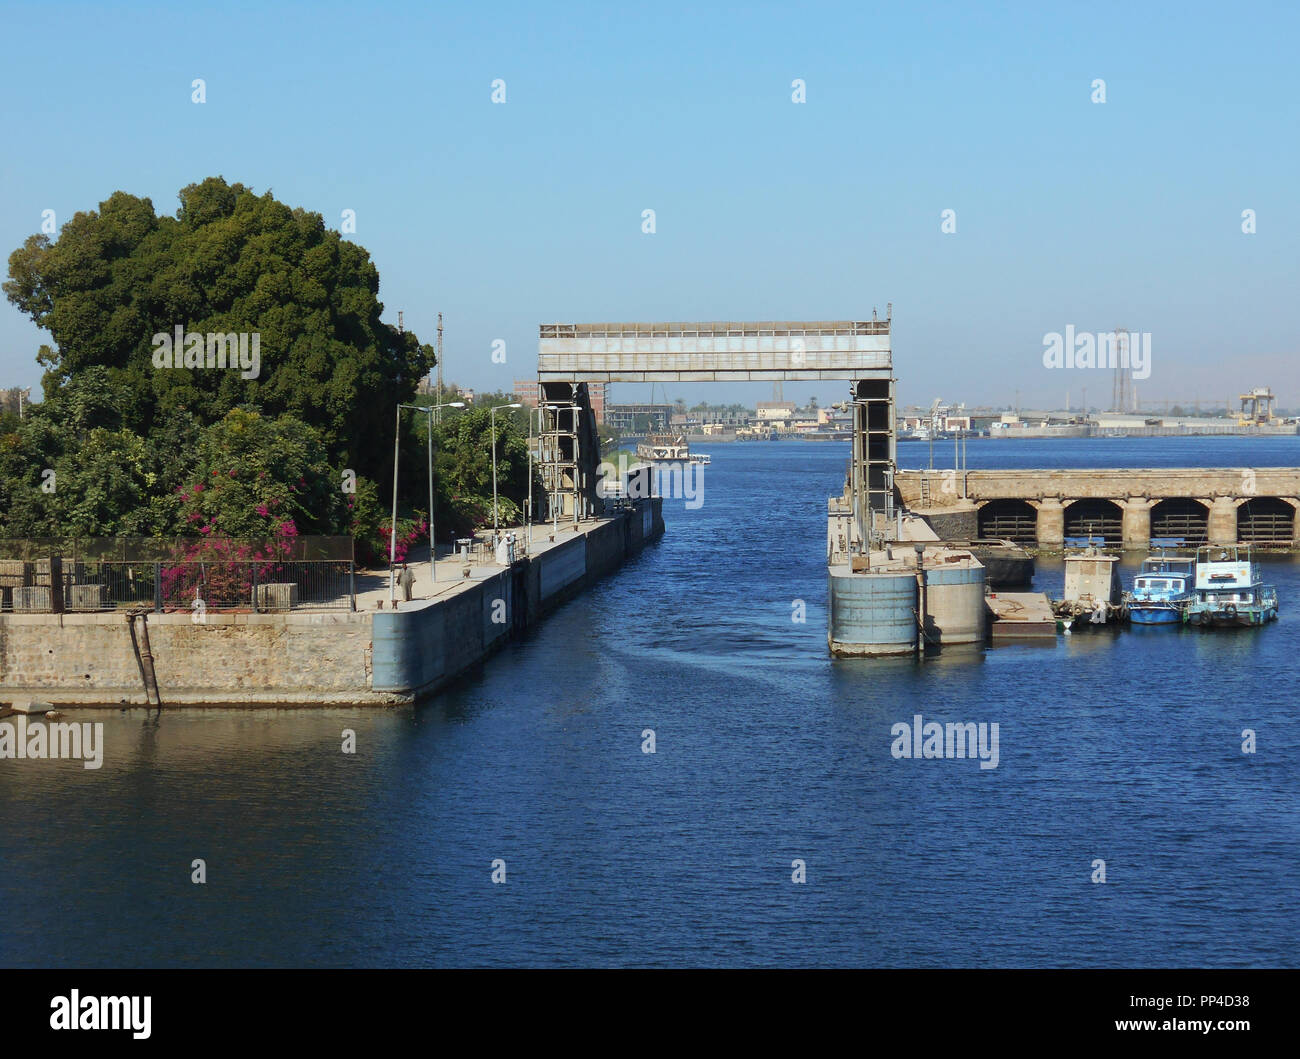 Die einzige Lücke in einem langen konkrete Barriere, die über den Fluss Nil erstreckt sich um den Fluß der Schiffe, Boote und andere Wasser getragene Verkehr zu regeln Stockfoto